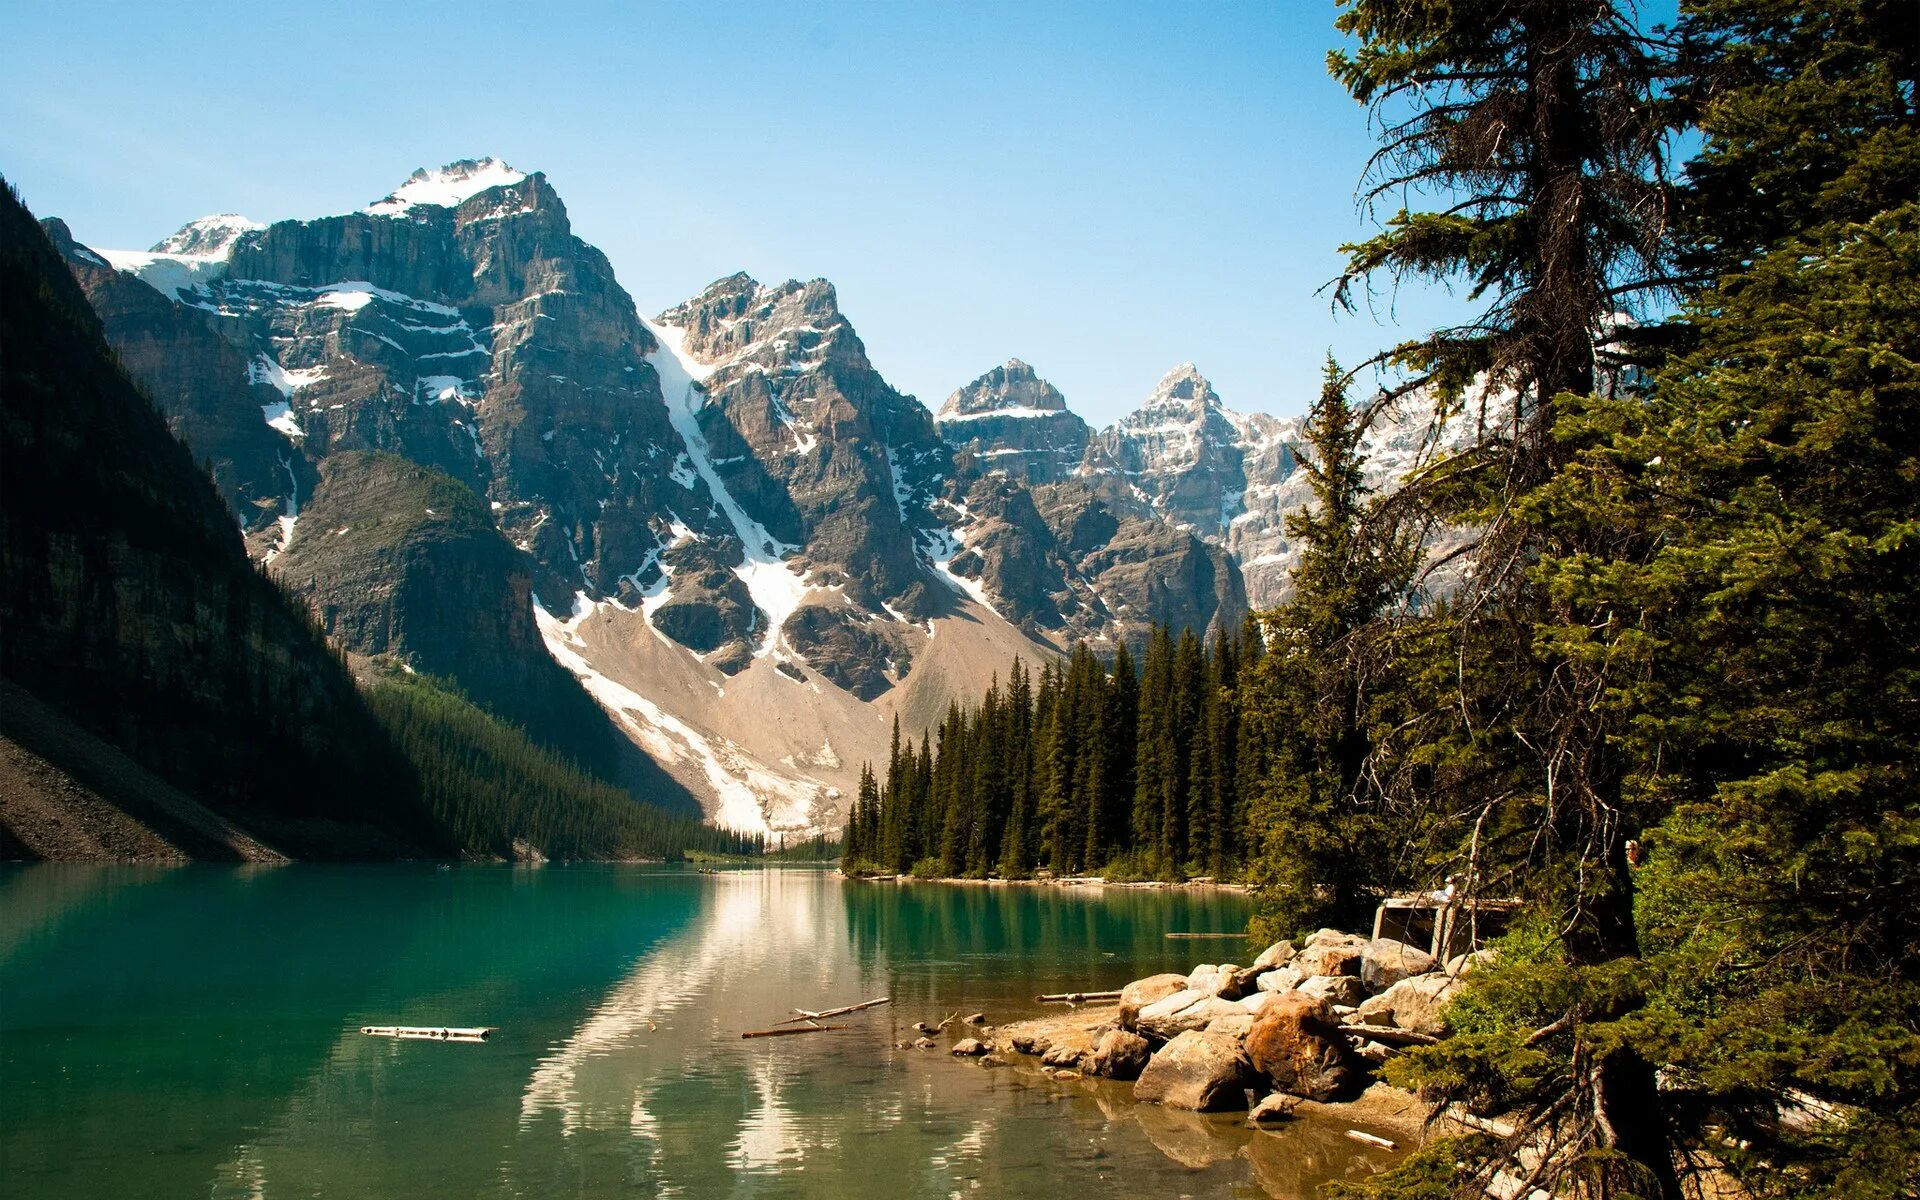 Картинка на большой экран. Озеро Кольсай. Озеро Онтарио горы. Пейзаж. Красивая природа горы.